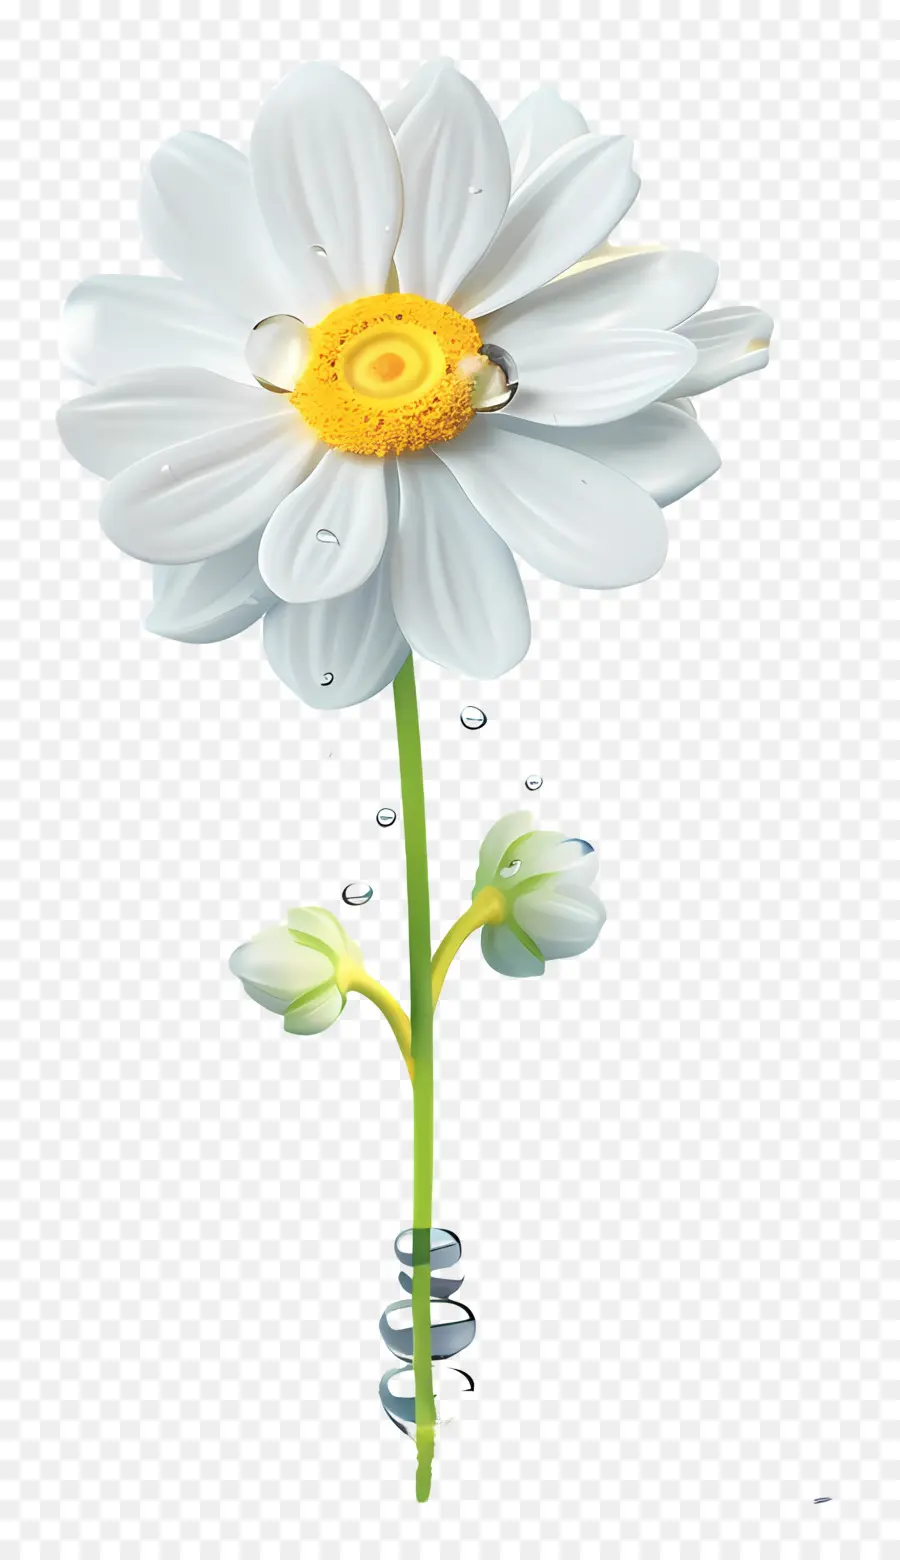 hoa trắng - Hoa trắng với giọt nước trên thân cây